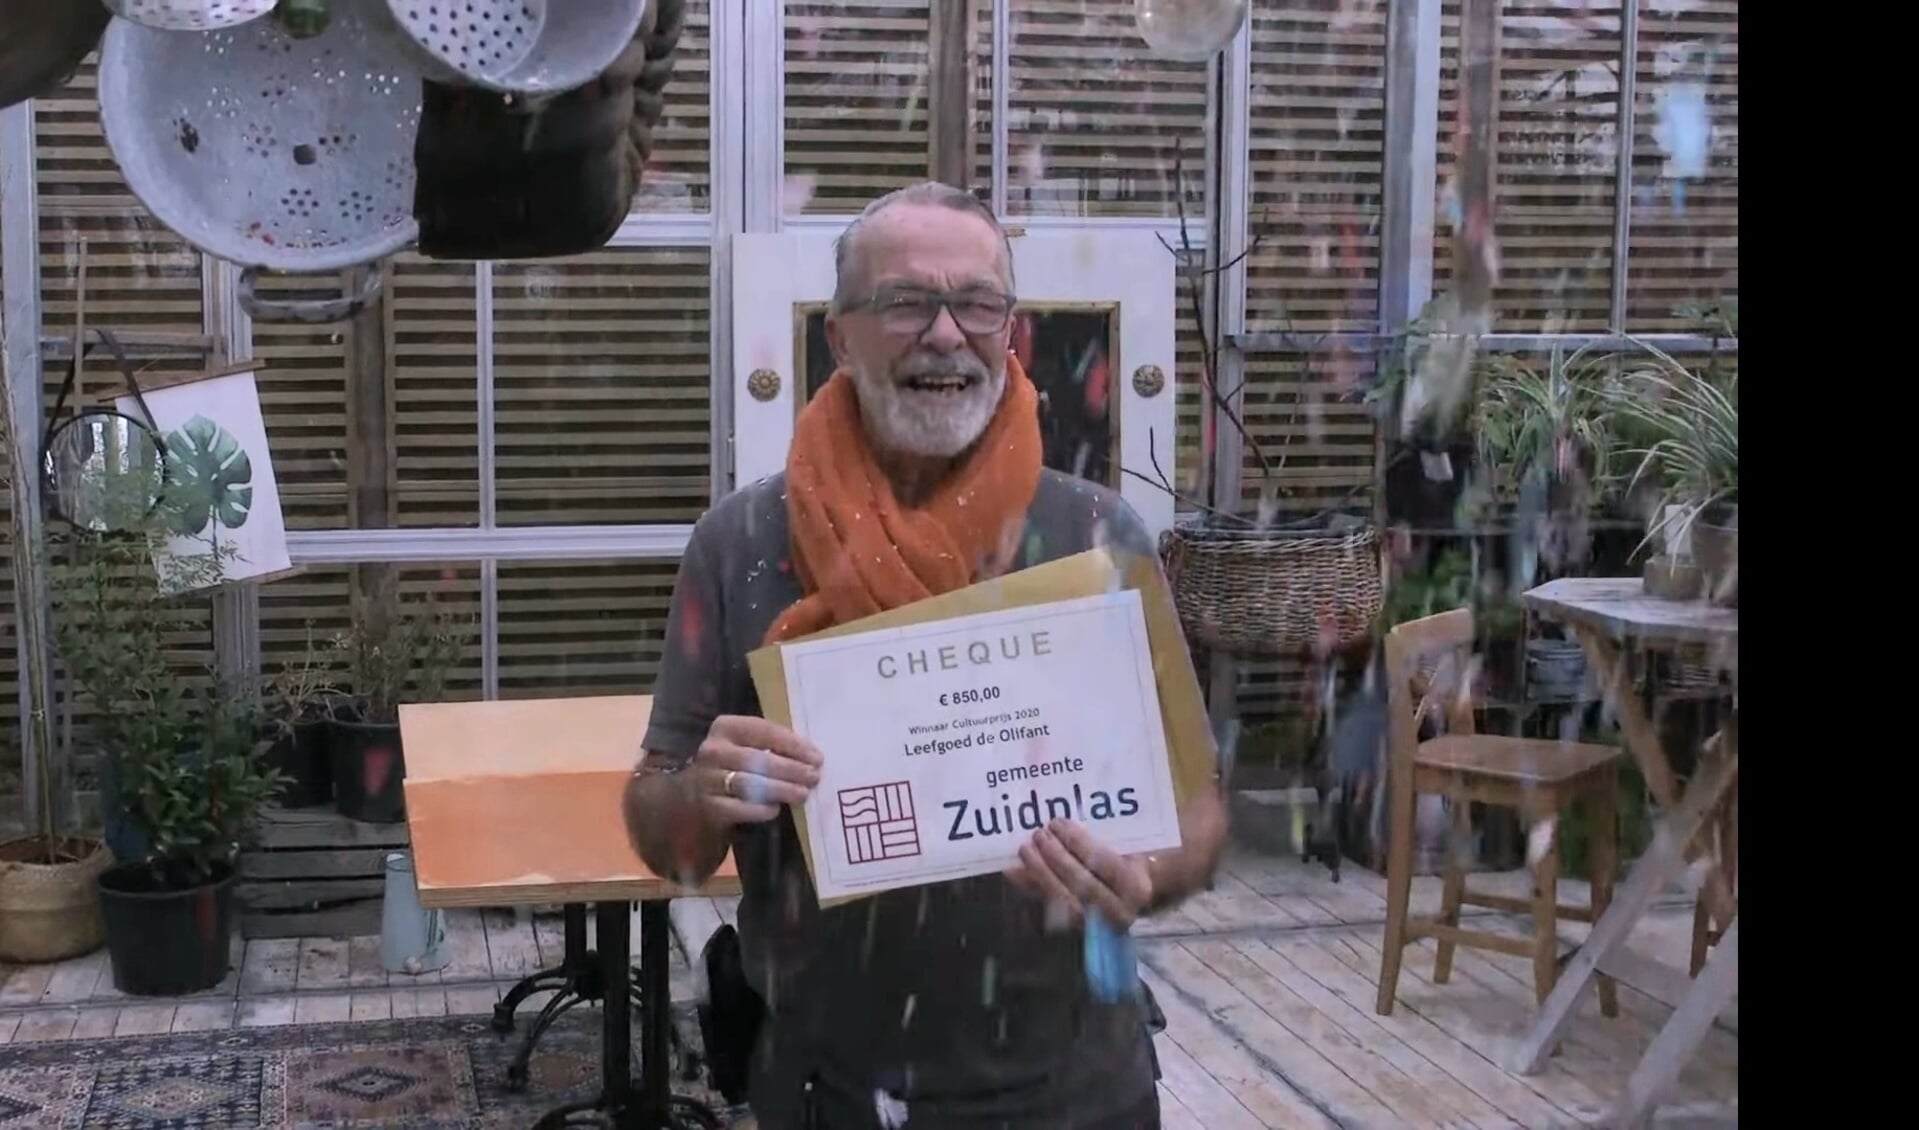 Het in ontvangst nemen van de prijs door Bart Belonje van Leefgoed de Olifant werd via YouTube uitgezonden.